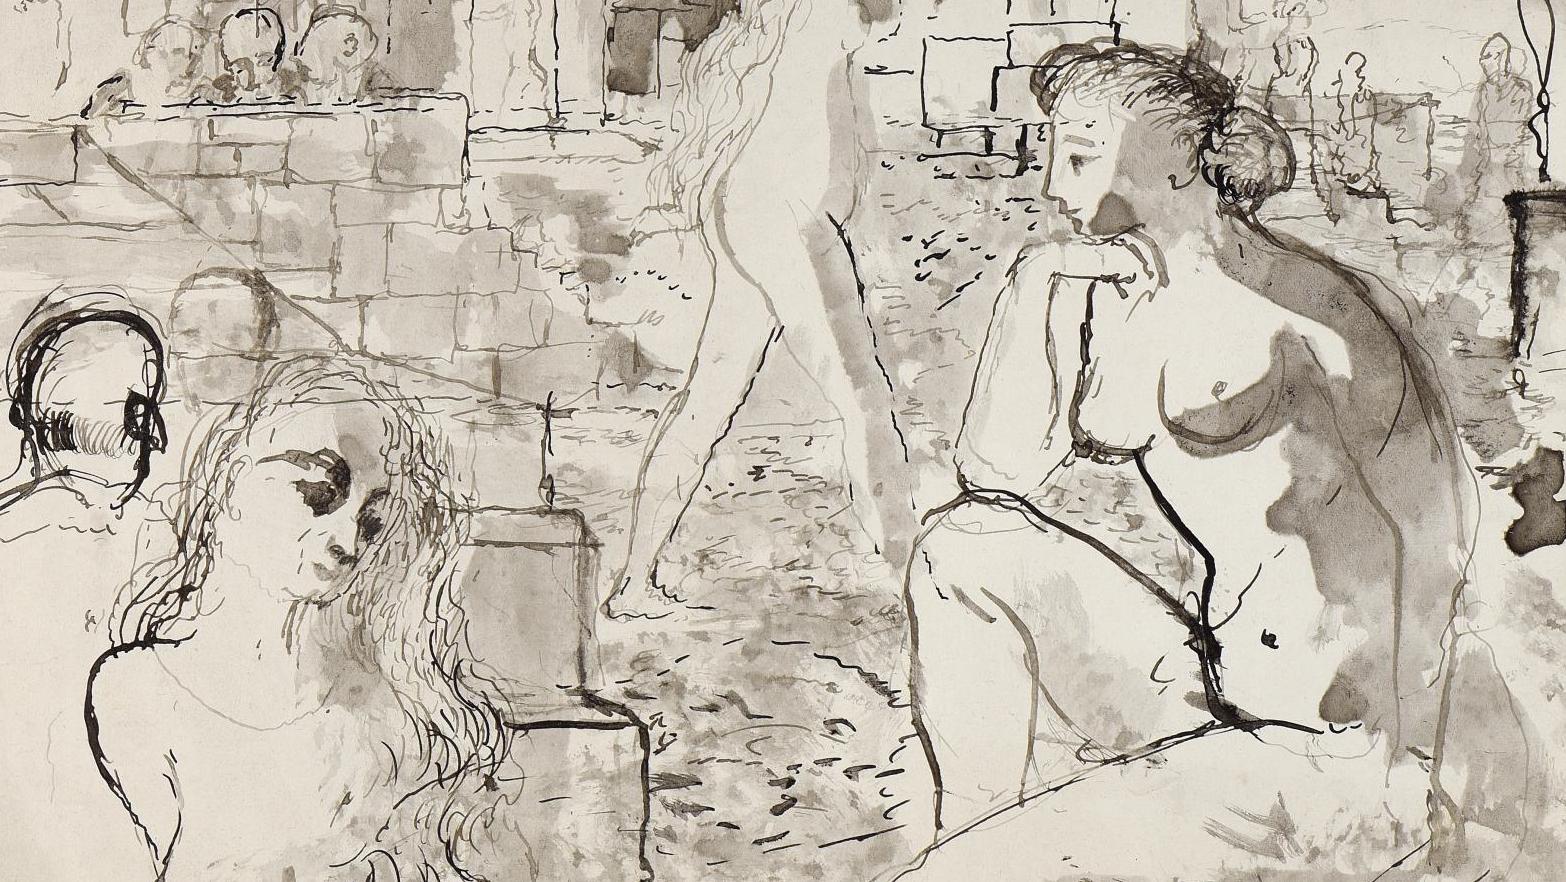 Paul Delvaux (1897-1994), Femmes et ruines, 1942, lavis signé et daté, 23,8 x 33 cm.... Un monde en ruine